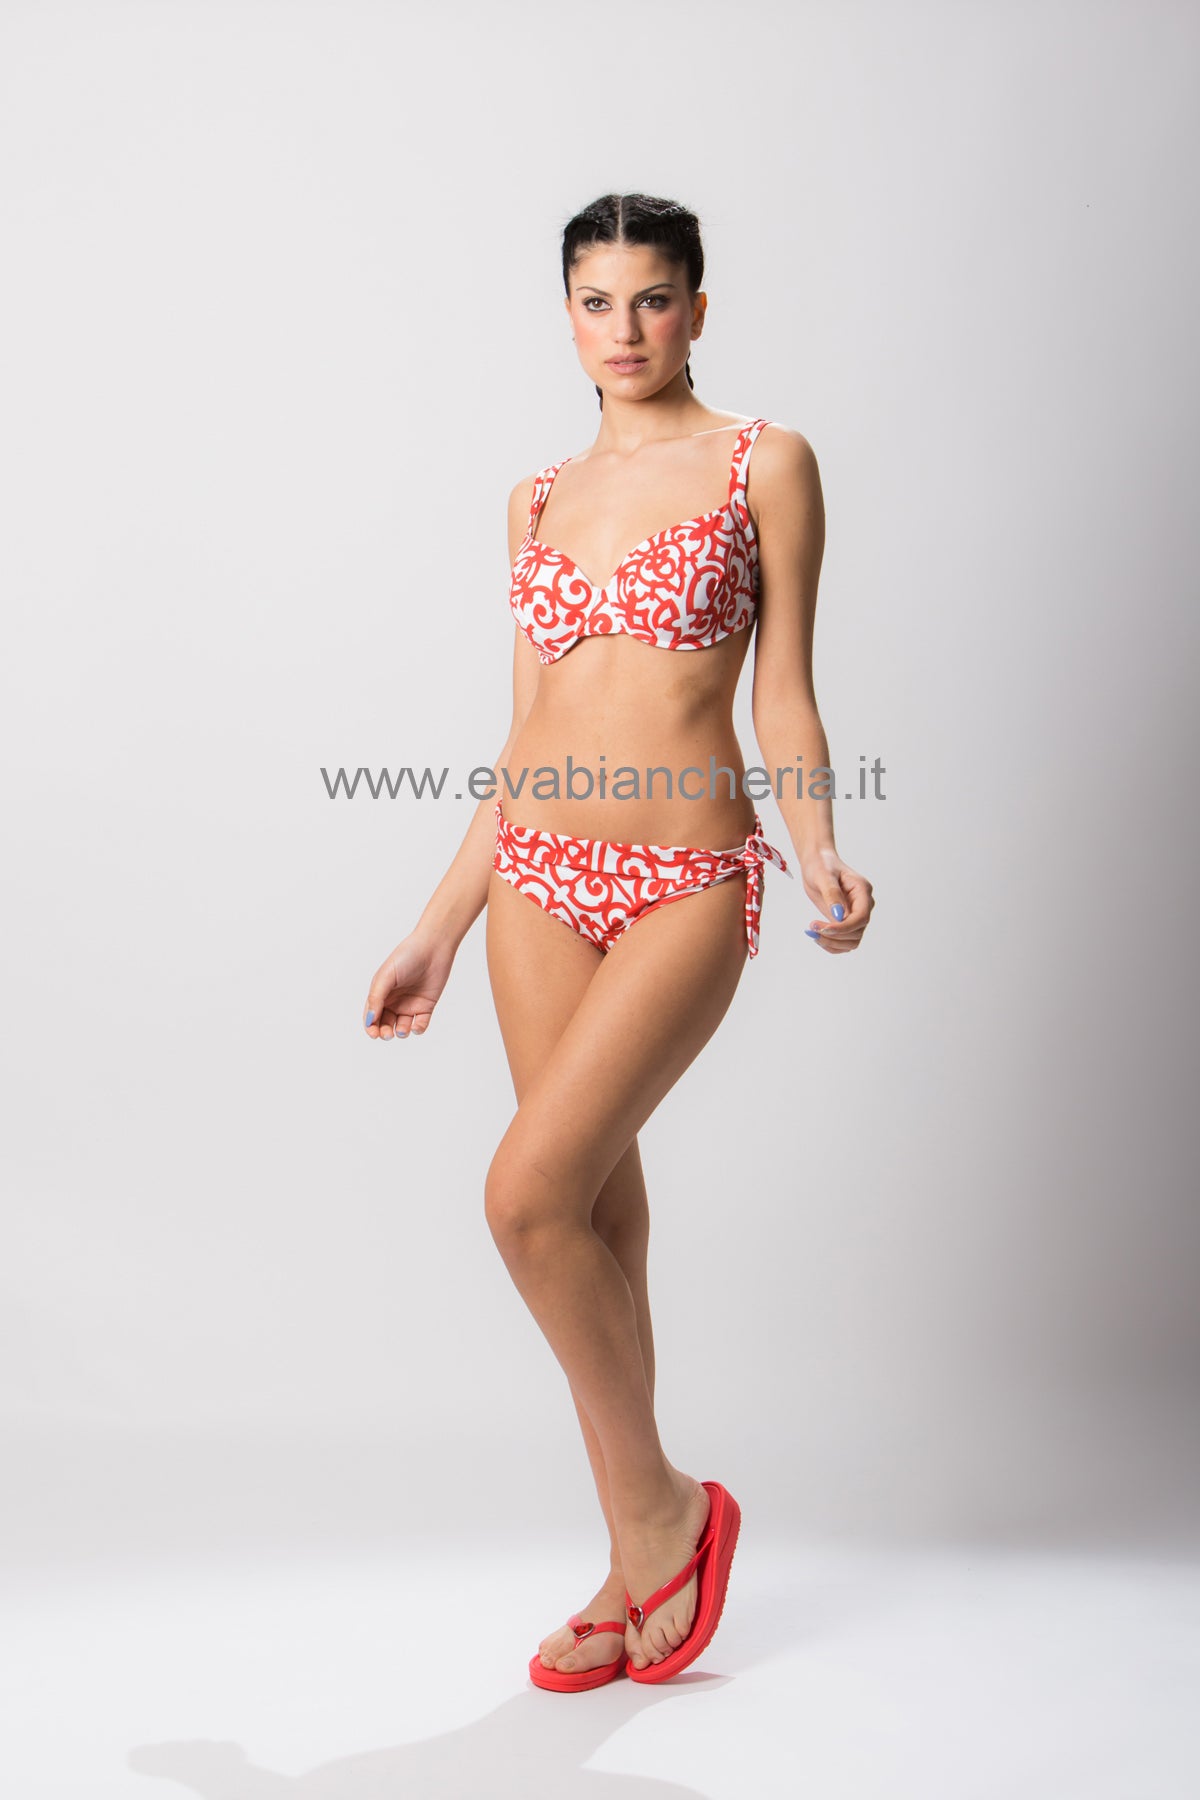 Reggiseno bikini Sfoderato con ferretto Donna 5869 500 Maryan Mehlhorn evabiancheria